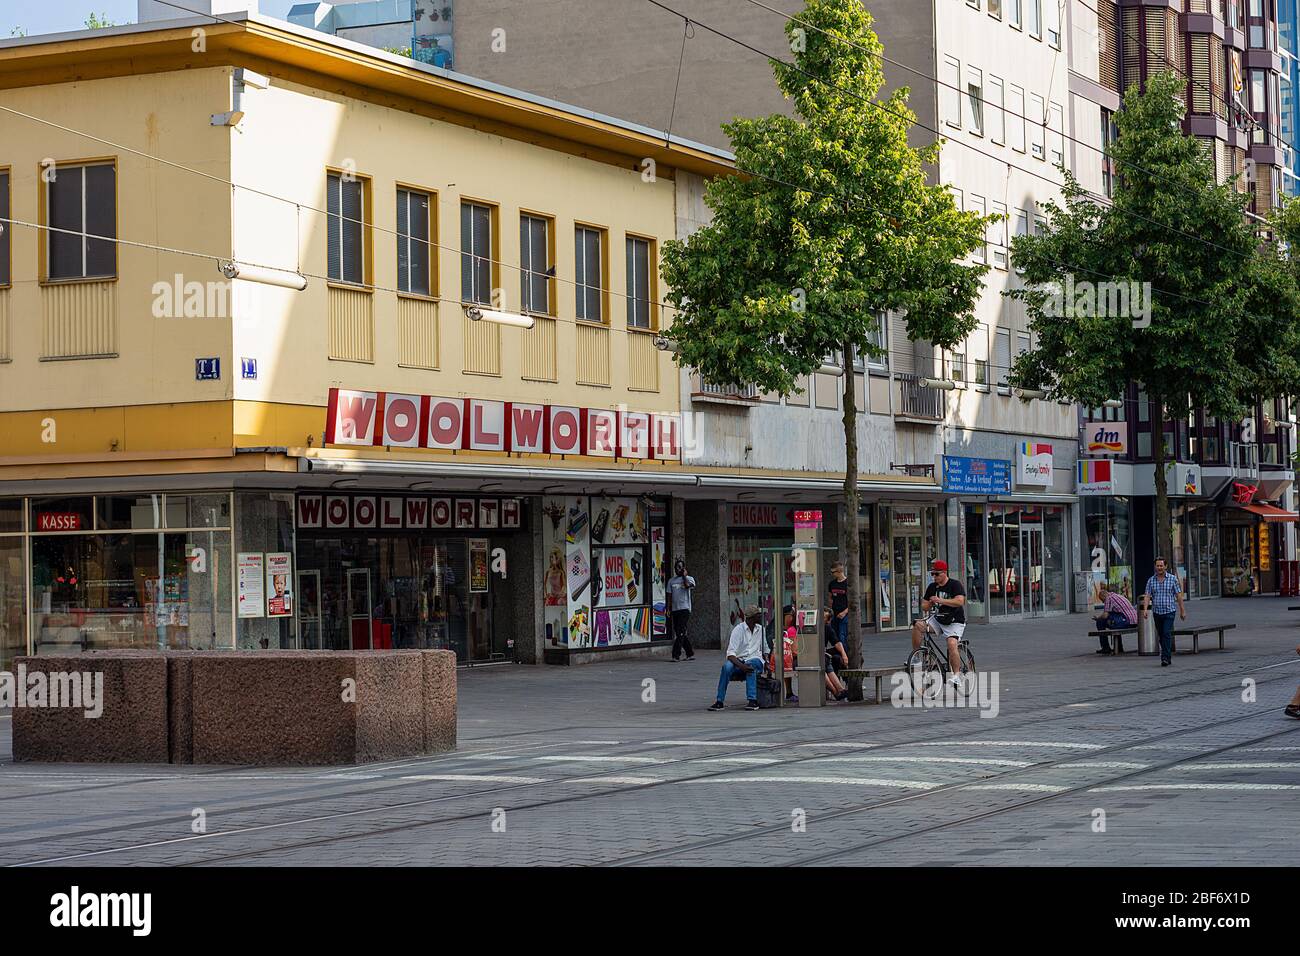 La cadena Woolworth y otros frentes de tiendas en una calle tranquila, Kurpfalzstrasse, Mannheim, Alemania. Foto de stock